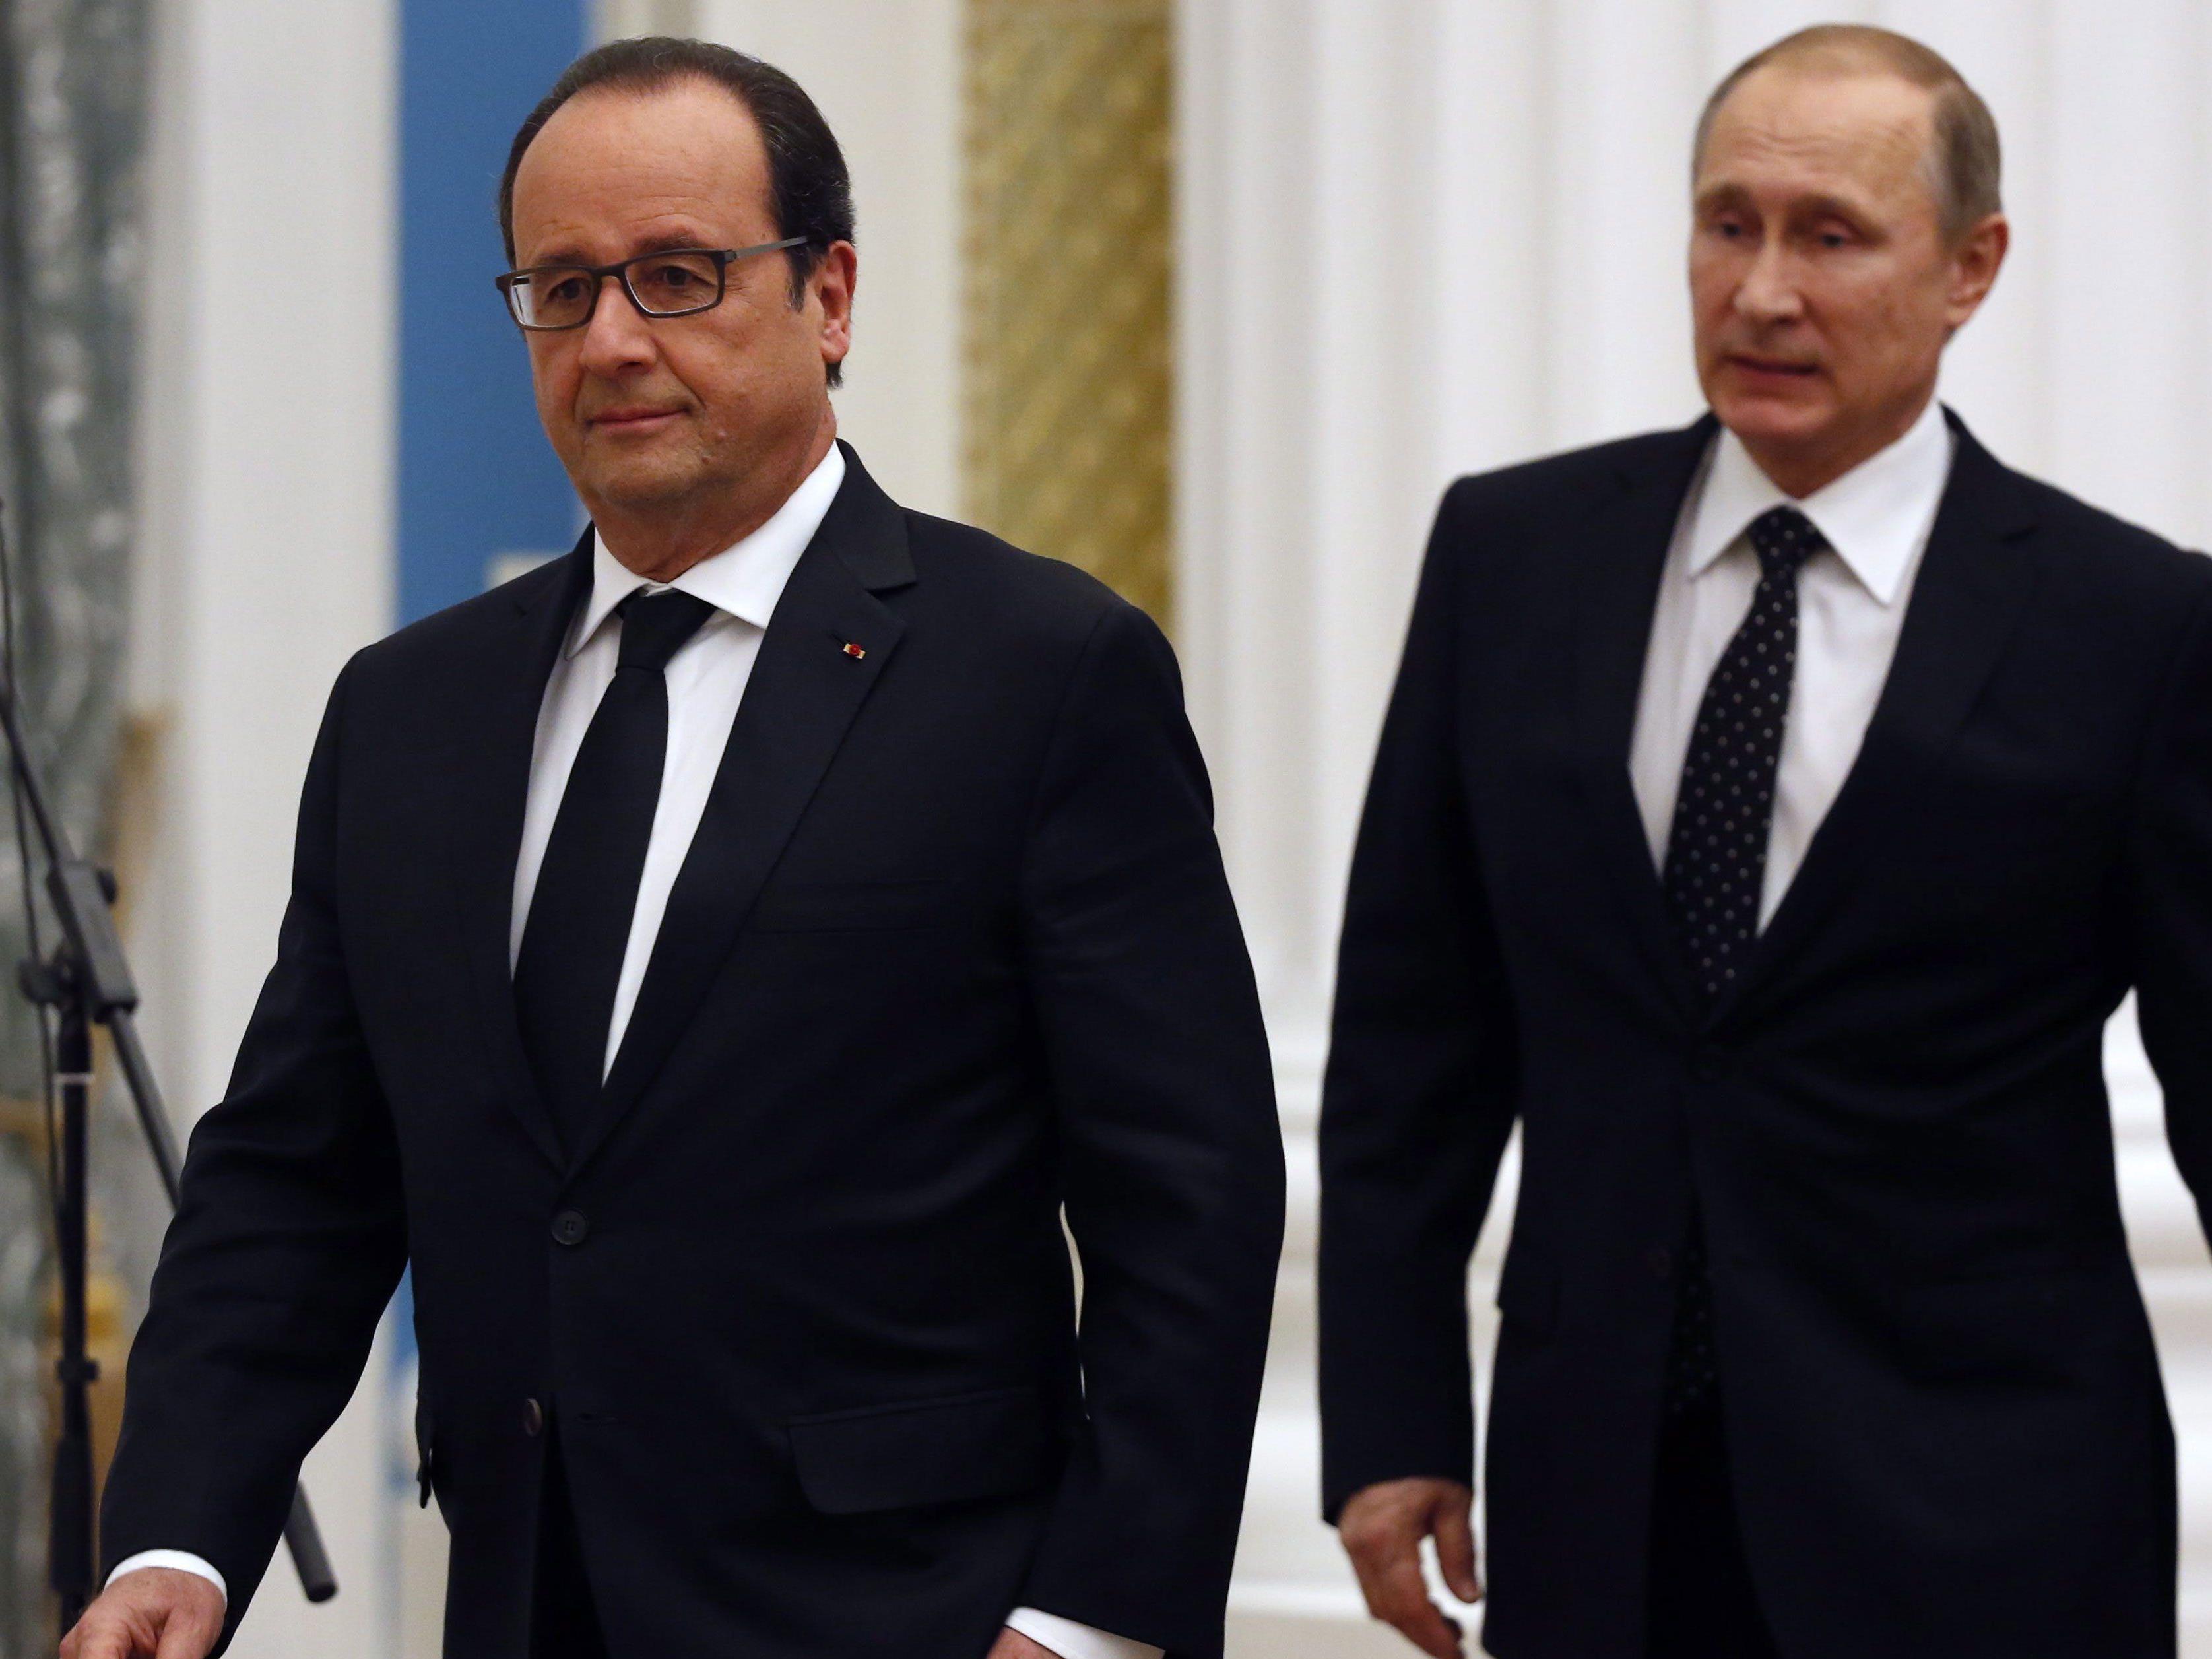 Putin und Hollande beim Treffen in Moskau.